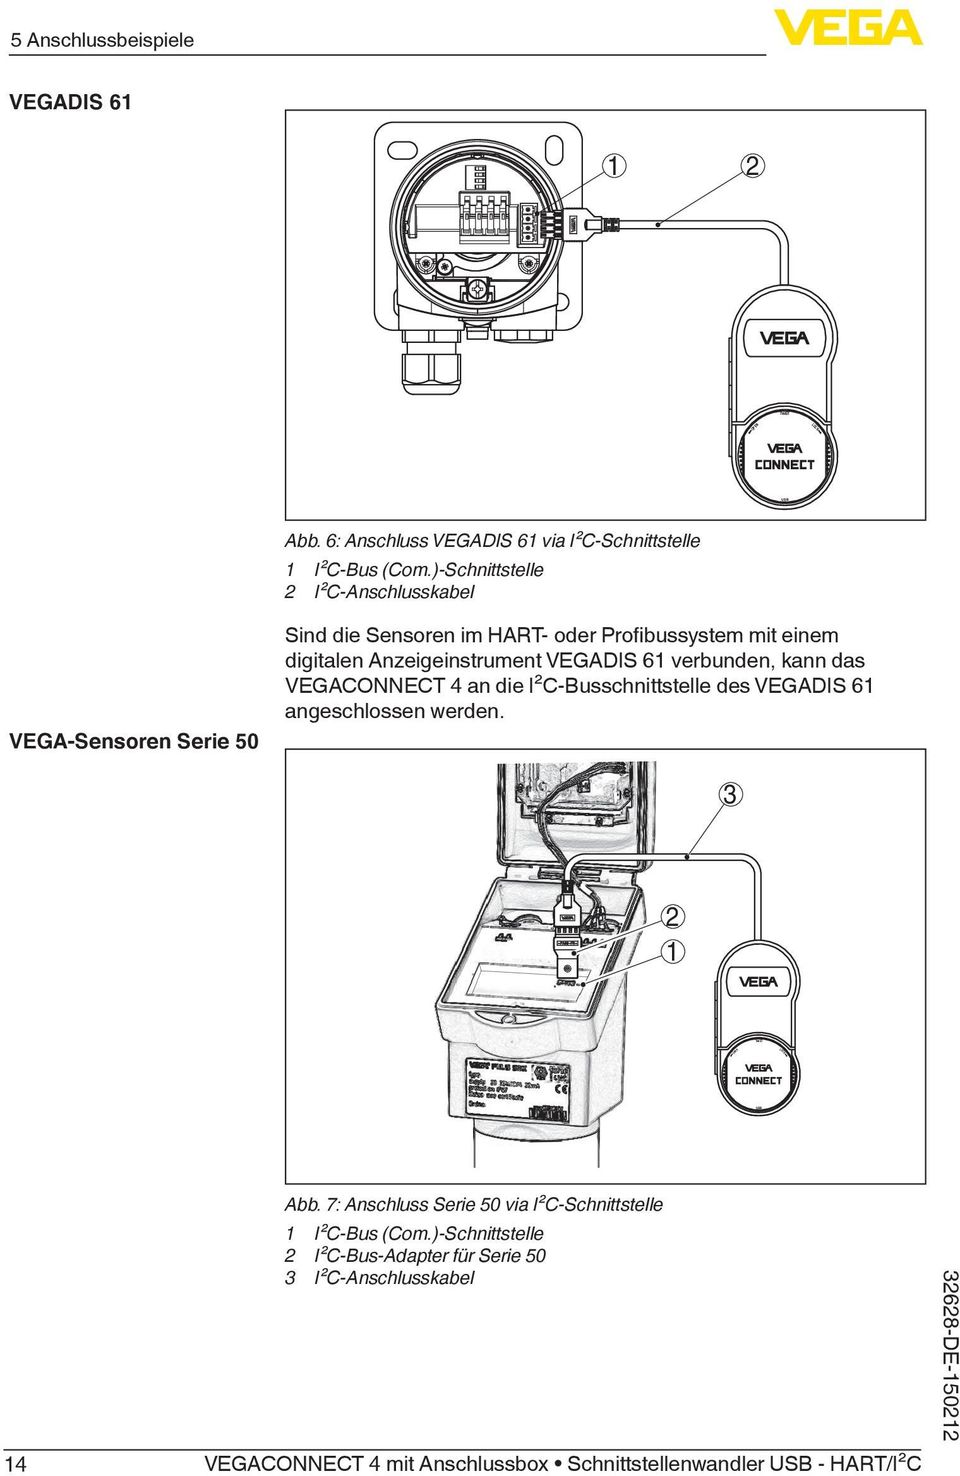 Anzeigeinstrument VEGADIS 61 verbunden, kann das VEGACONNECT 4 an die I²C-Busschnittstelle des VEGADIS 61 angeschlossen werden.